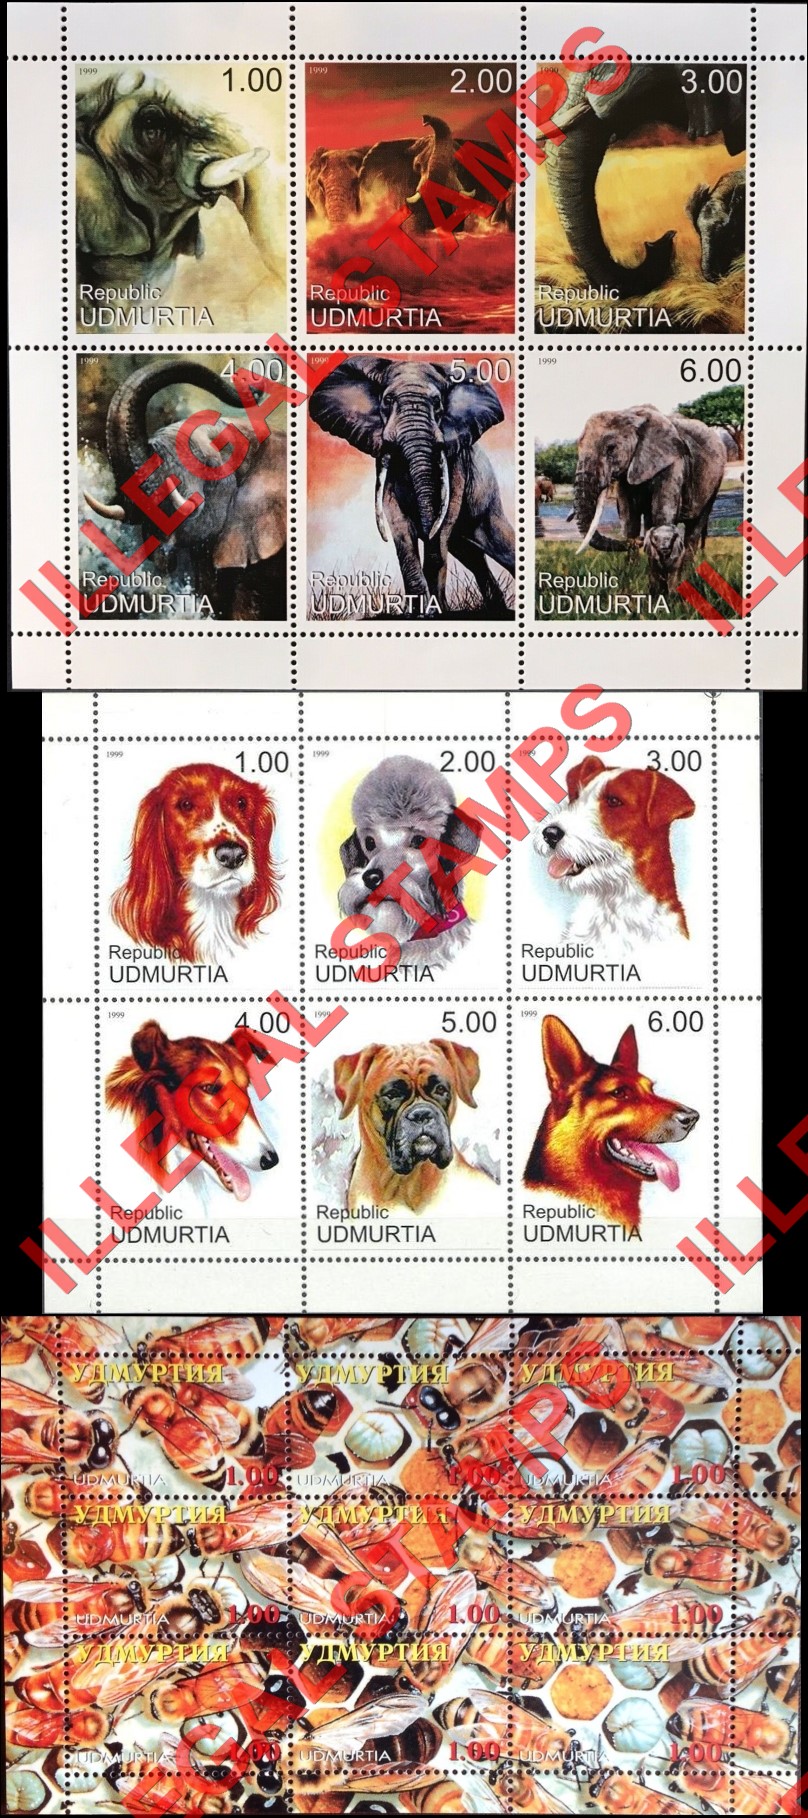 Republic of Udmurtia 1999 Counterfeit Illegal Stamps (Part 2)